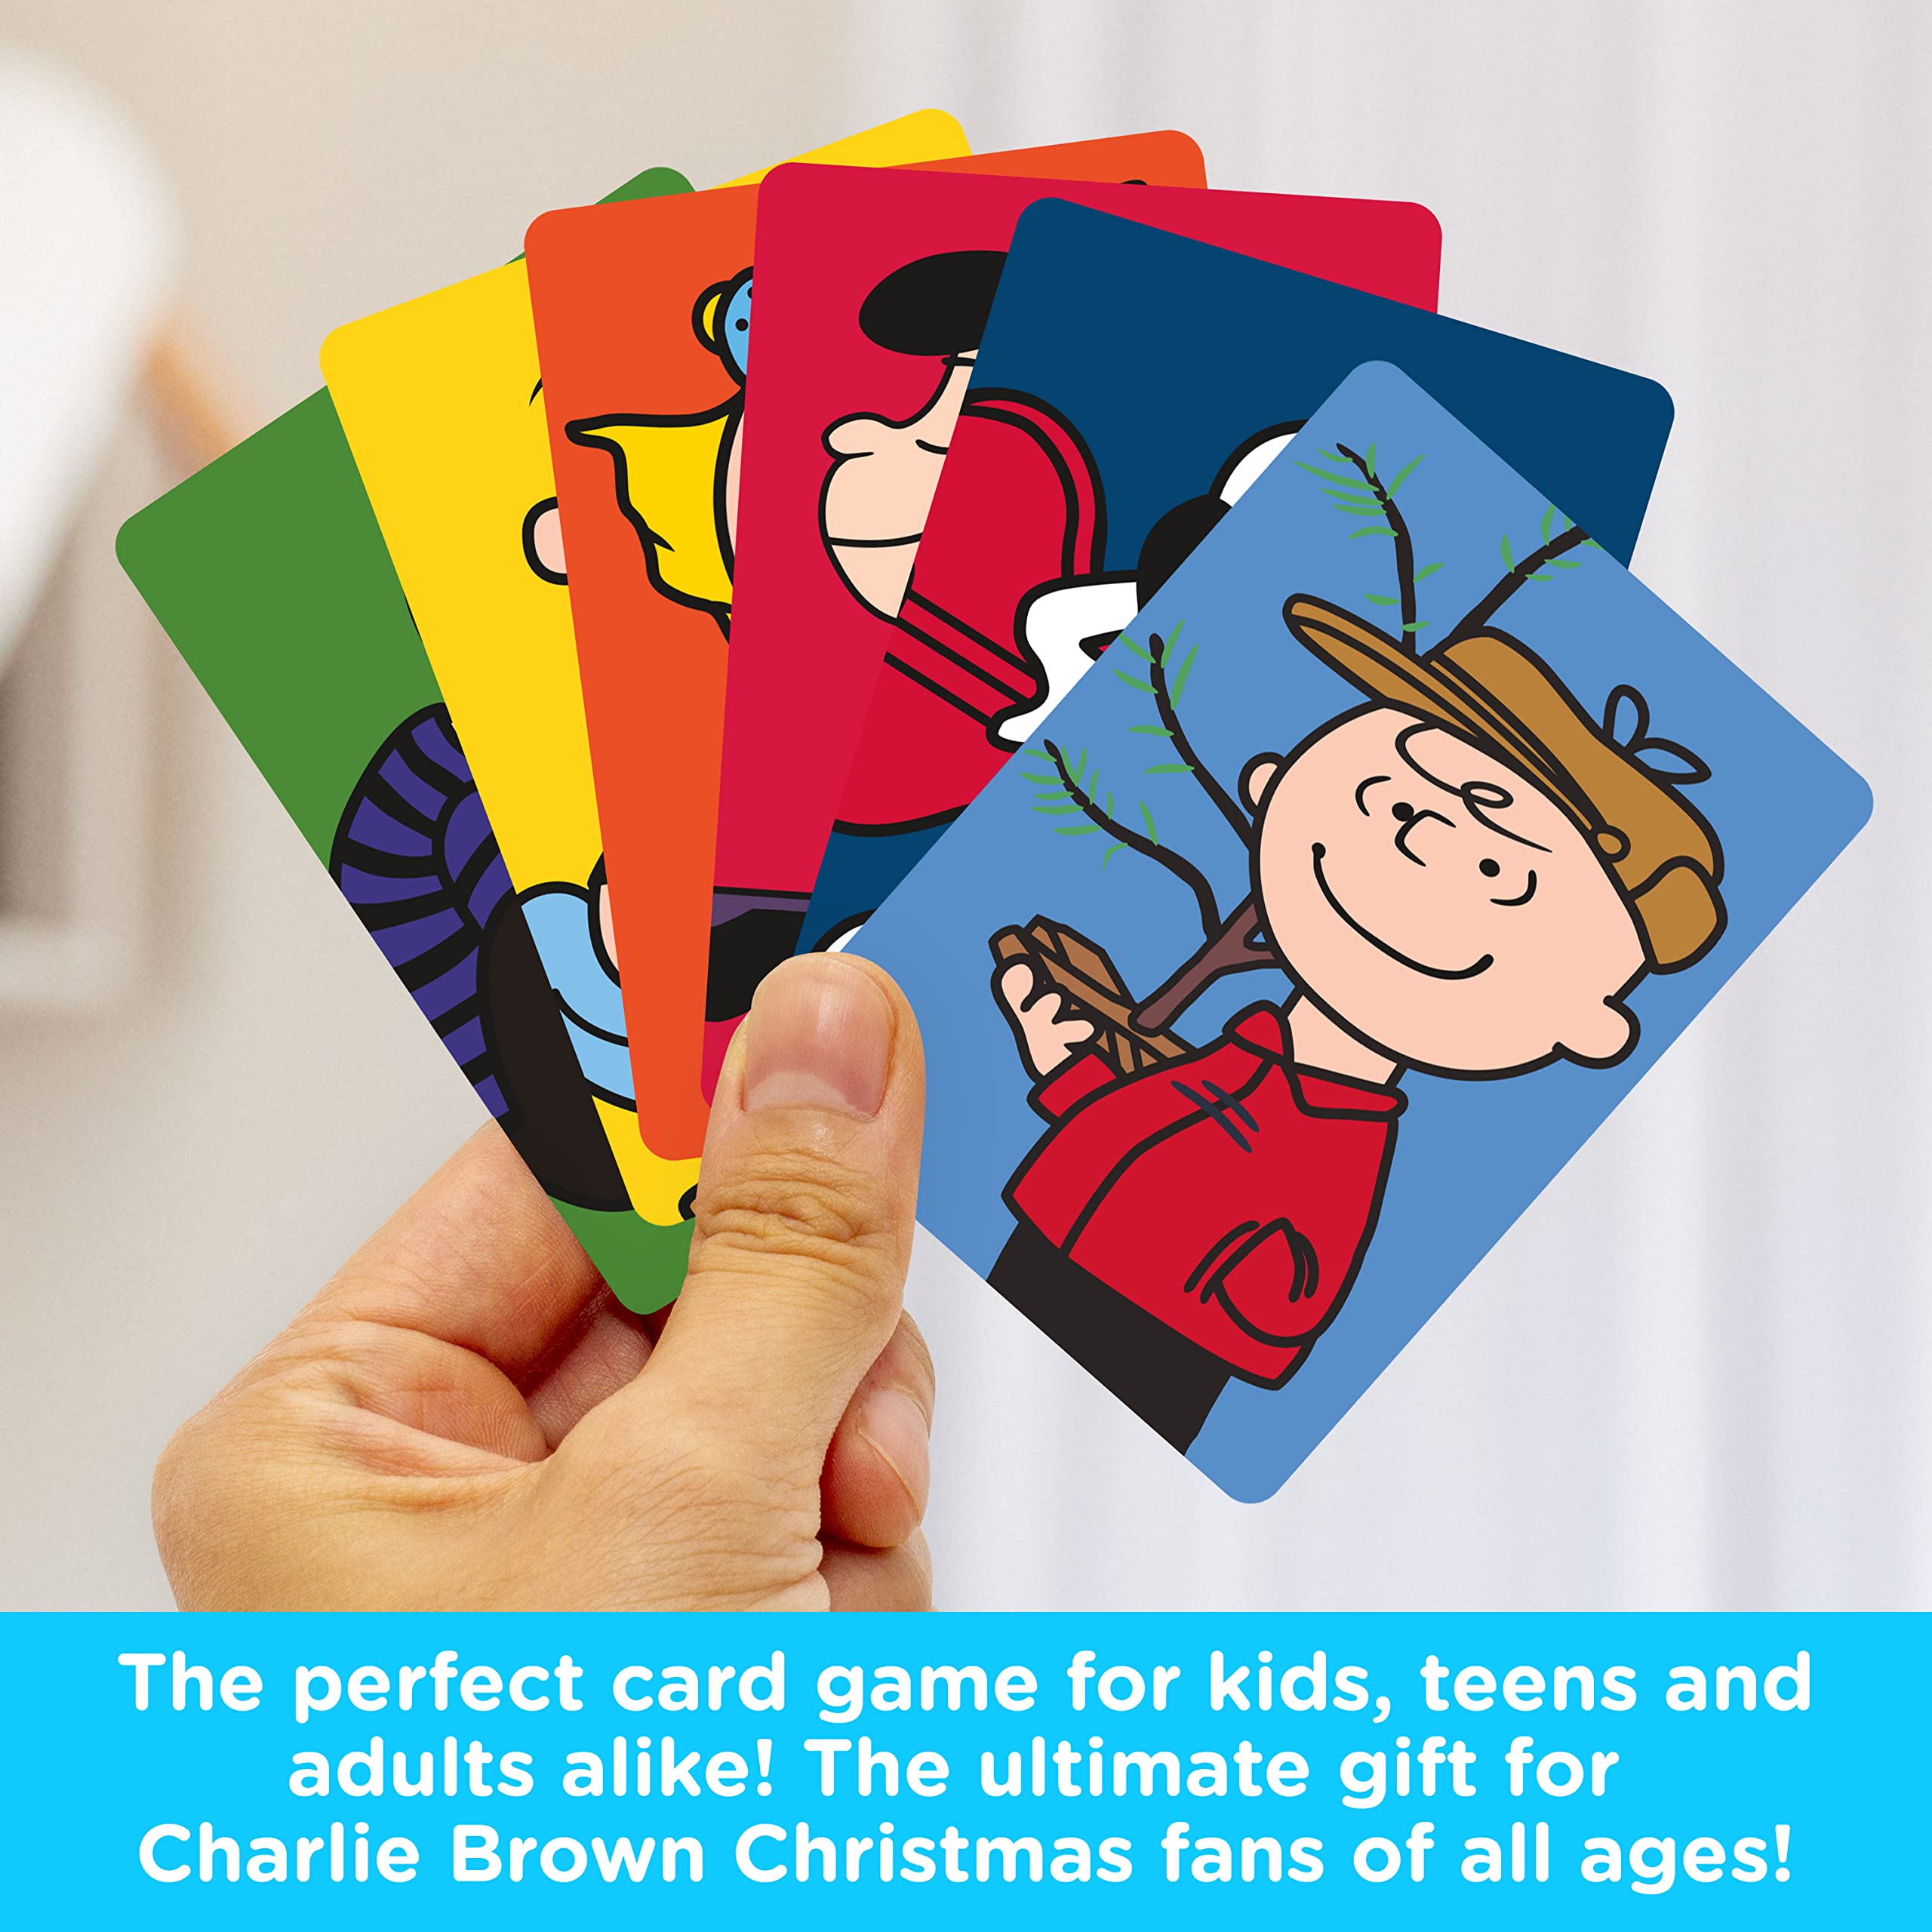 AQUARIUS - Peanuts Charlie Brown Christmas Memory Master Card Game